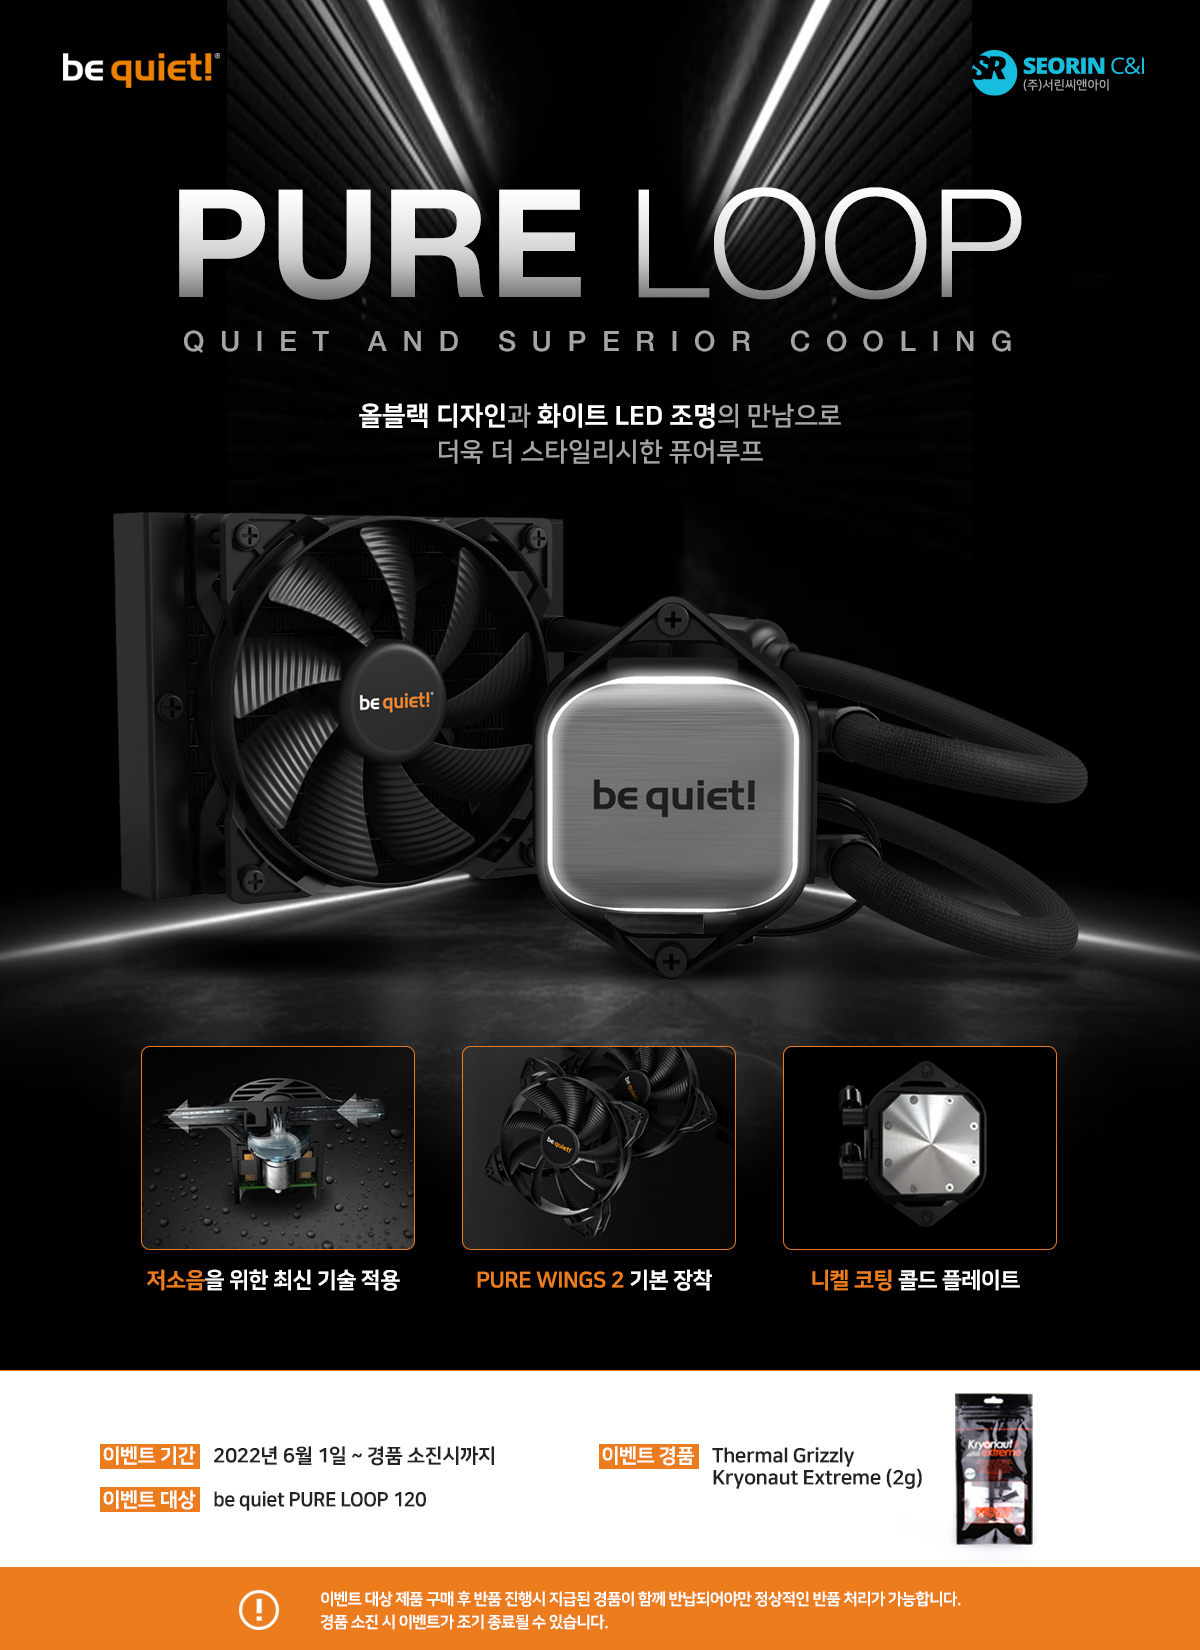 비콰이어트 PURE LOOP 120 제품 구매시 Kryonaut Extreme (2g) 증정